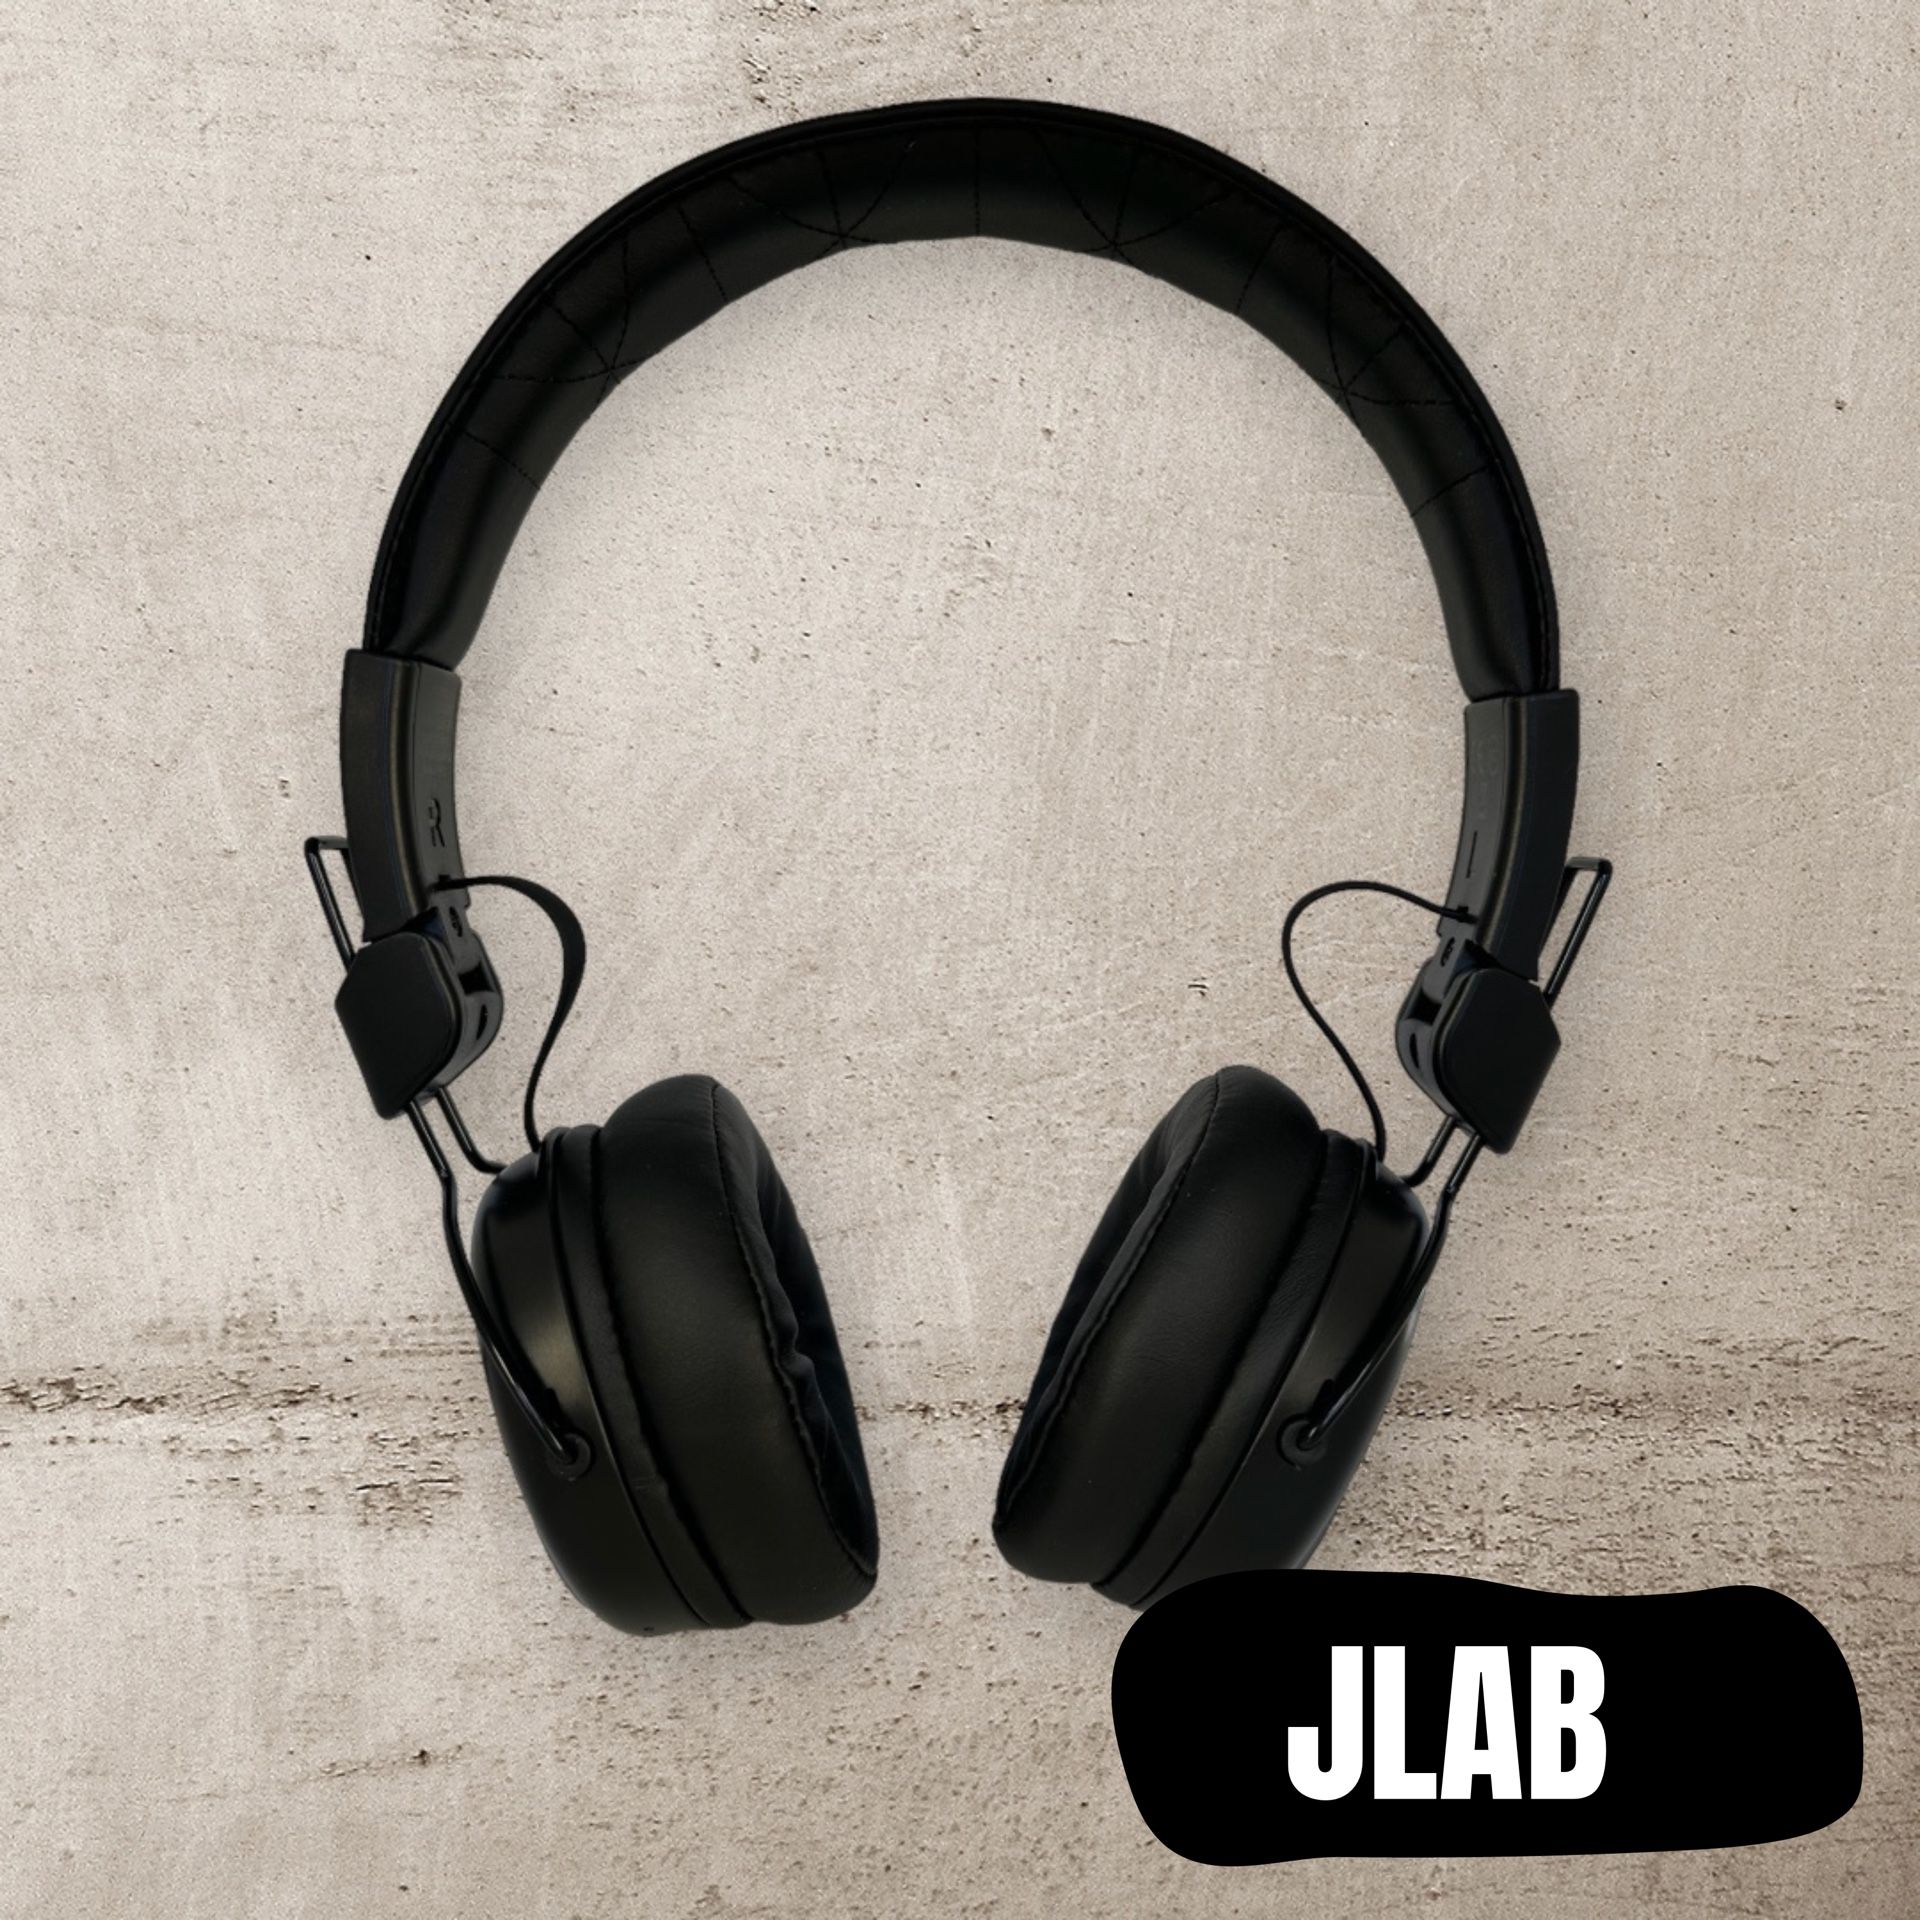 JLAB Bluetooth Headset Used